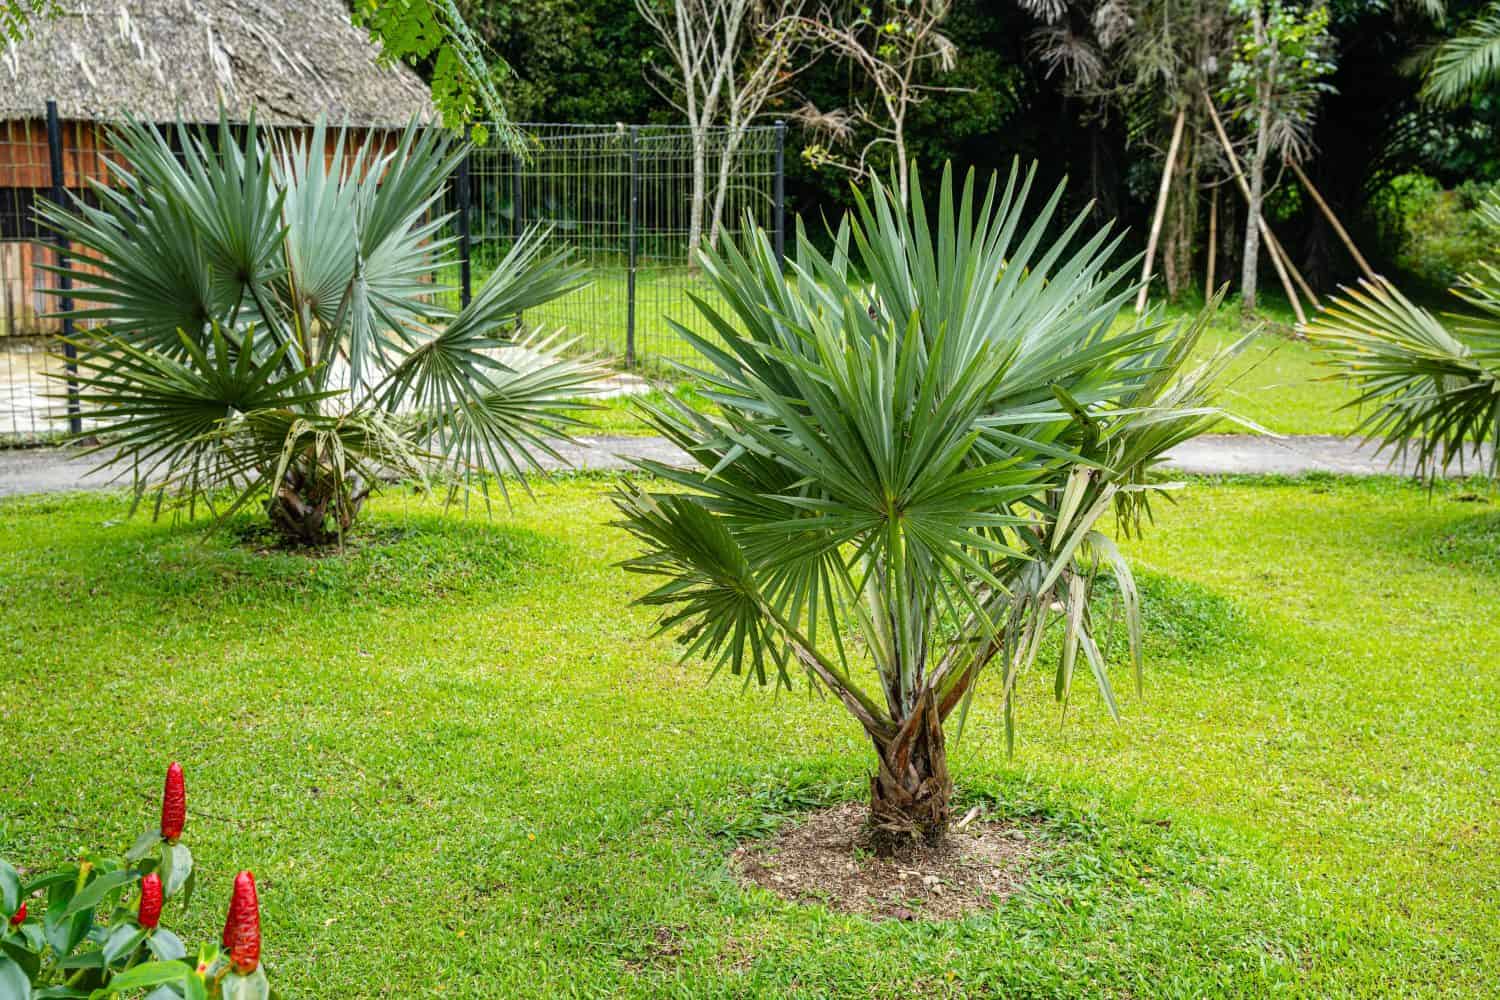 La Brahea armata, comunemente conosciuta come palma blu messicana o palma blu dell'esperto, è un grande albero sempreverde della famiglia delle palme delle Arecaceae.